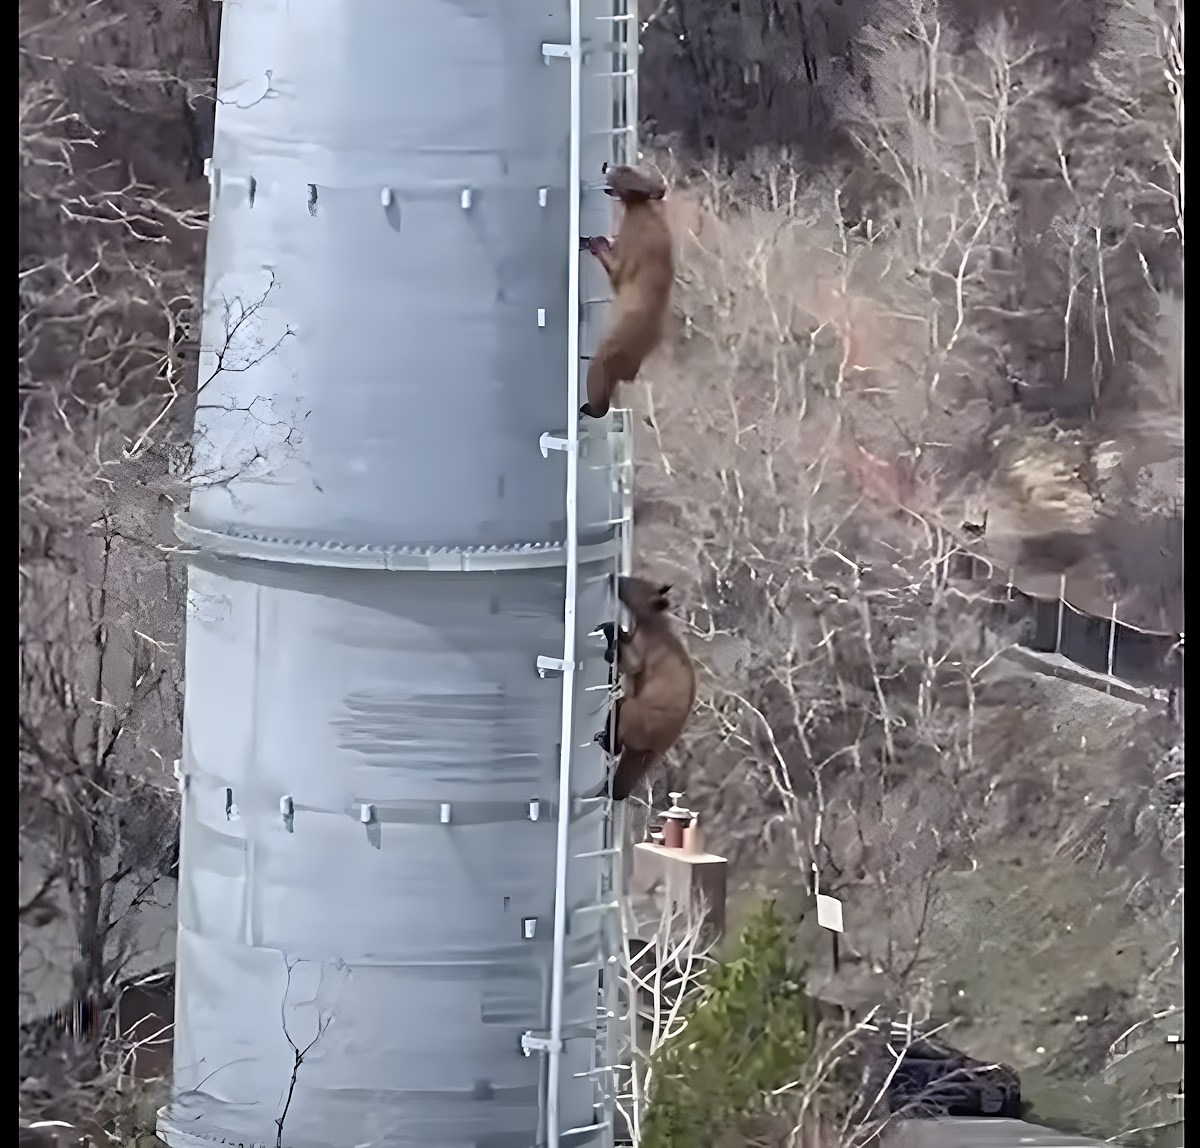 Vídeo: los osos demuestran sus habilidades escalando una pilona de un telecabina